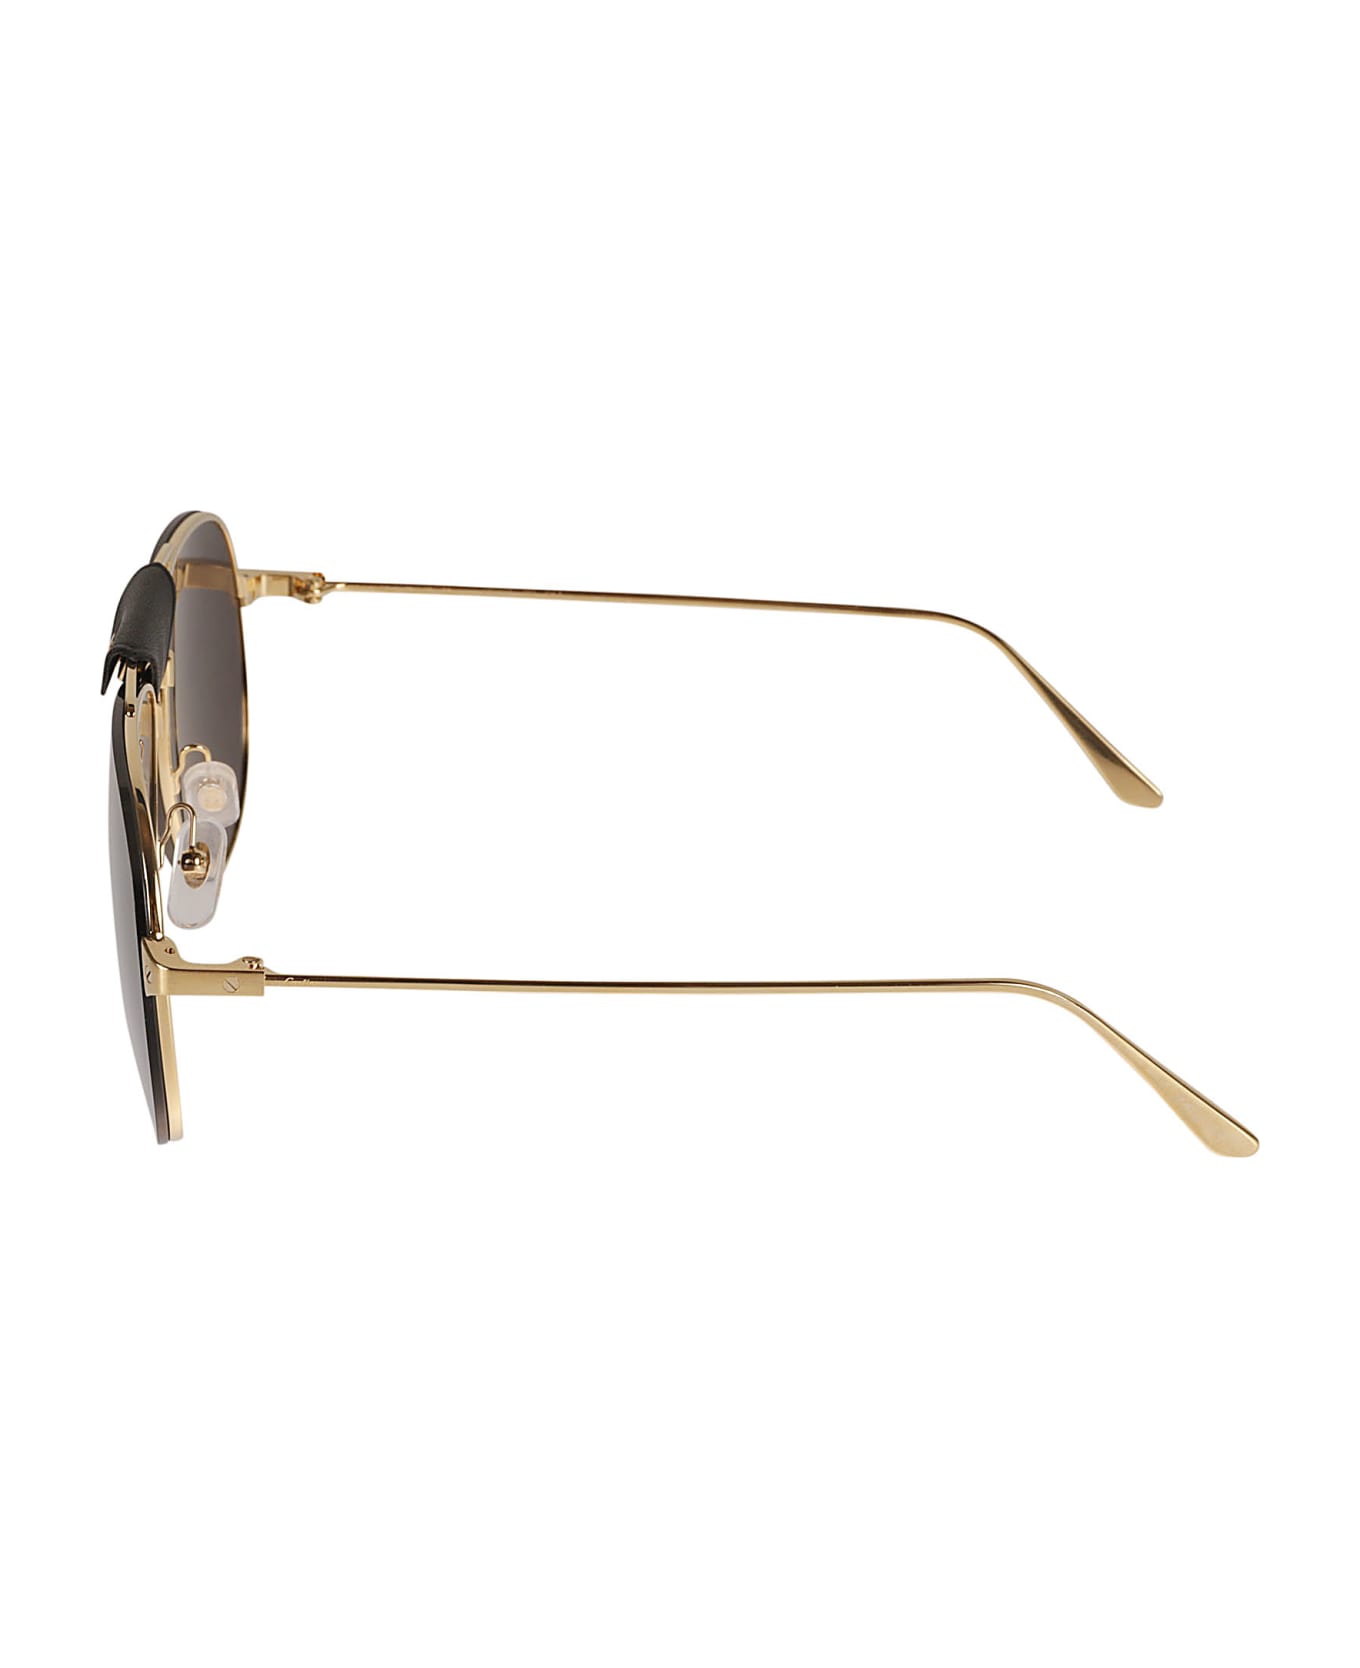 Cartier Eyewear Aviator Logo Detail Sunglasses - Gold